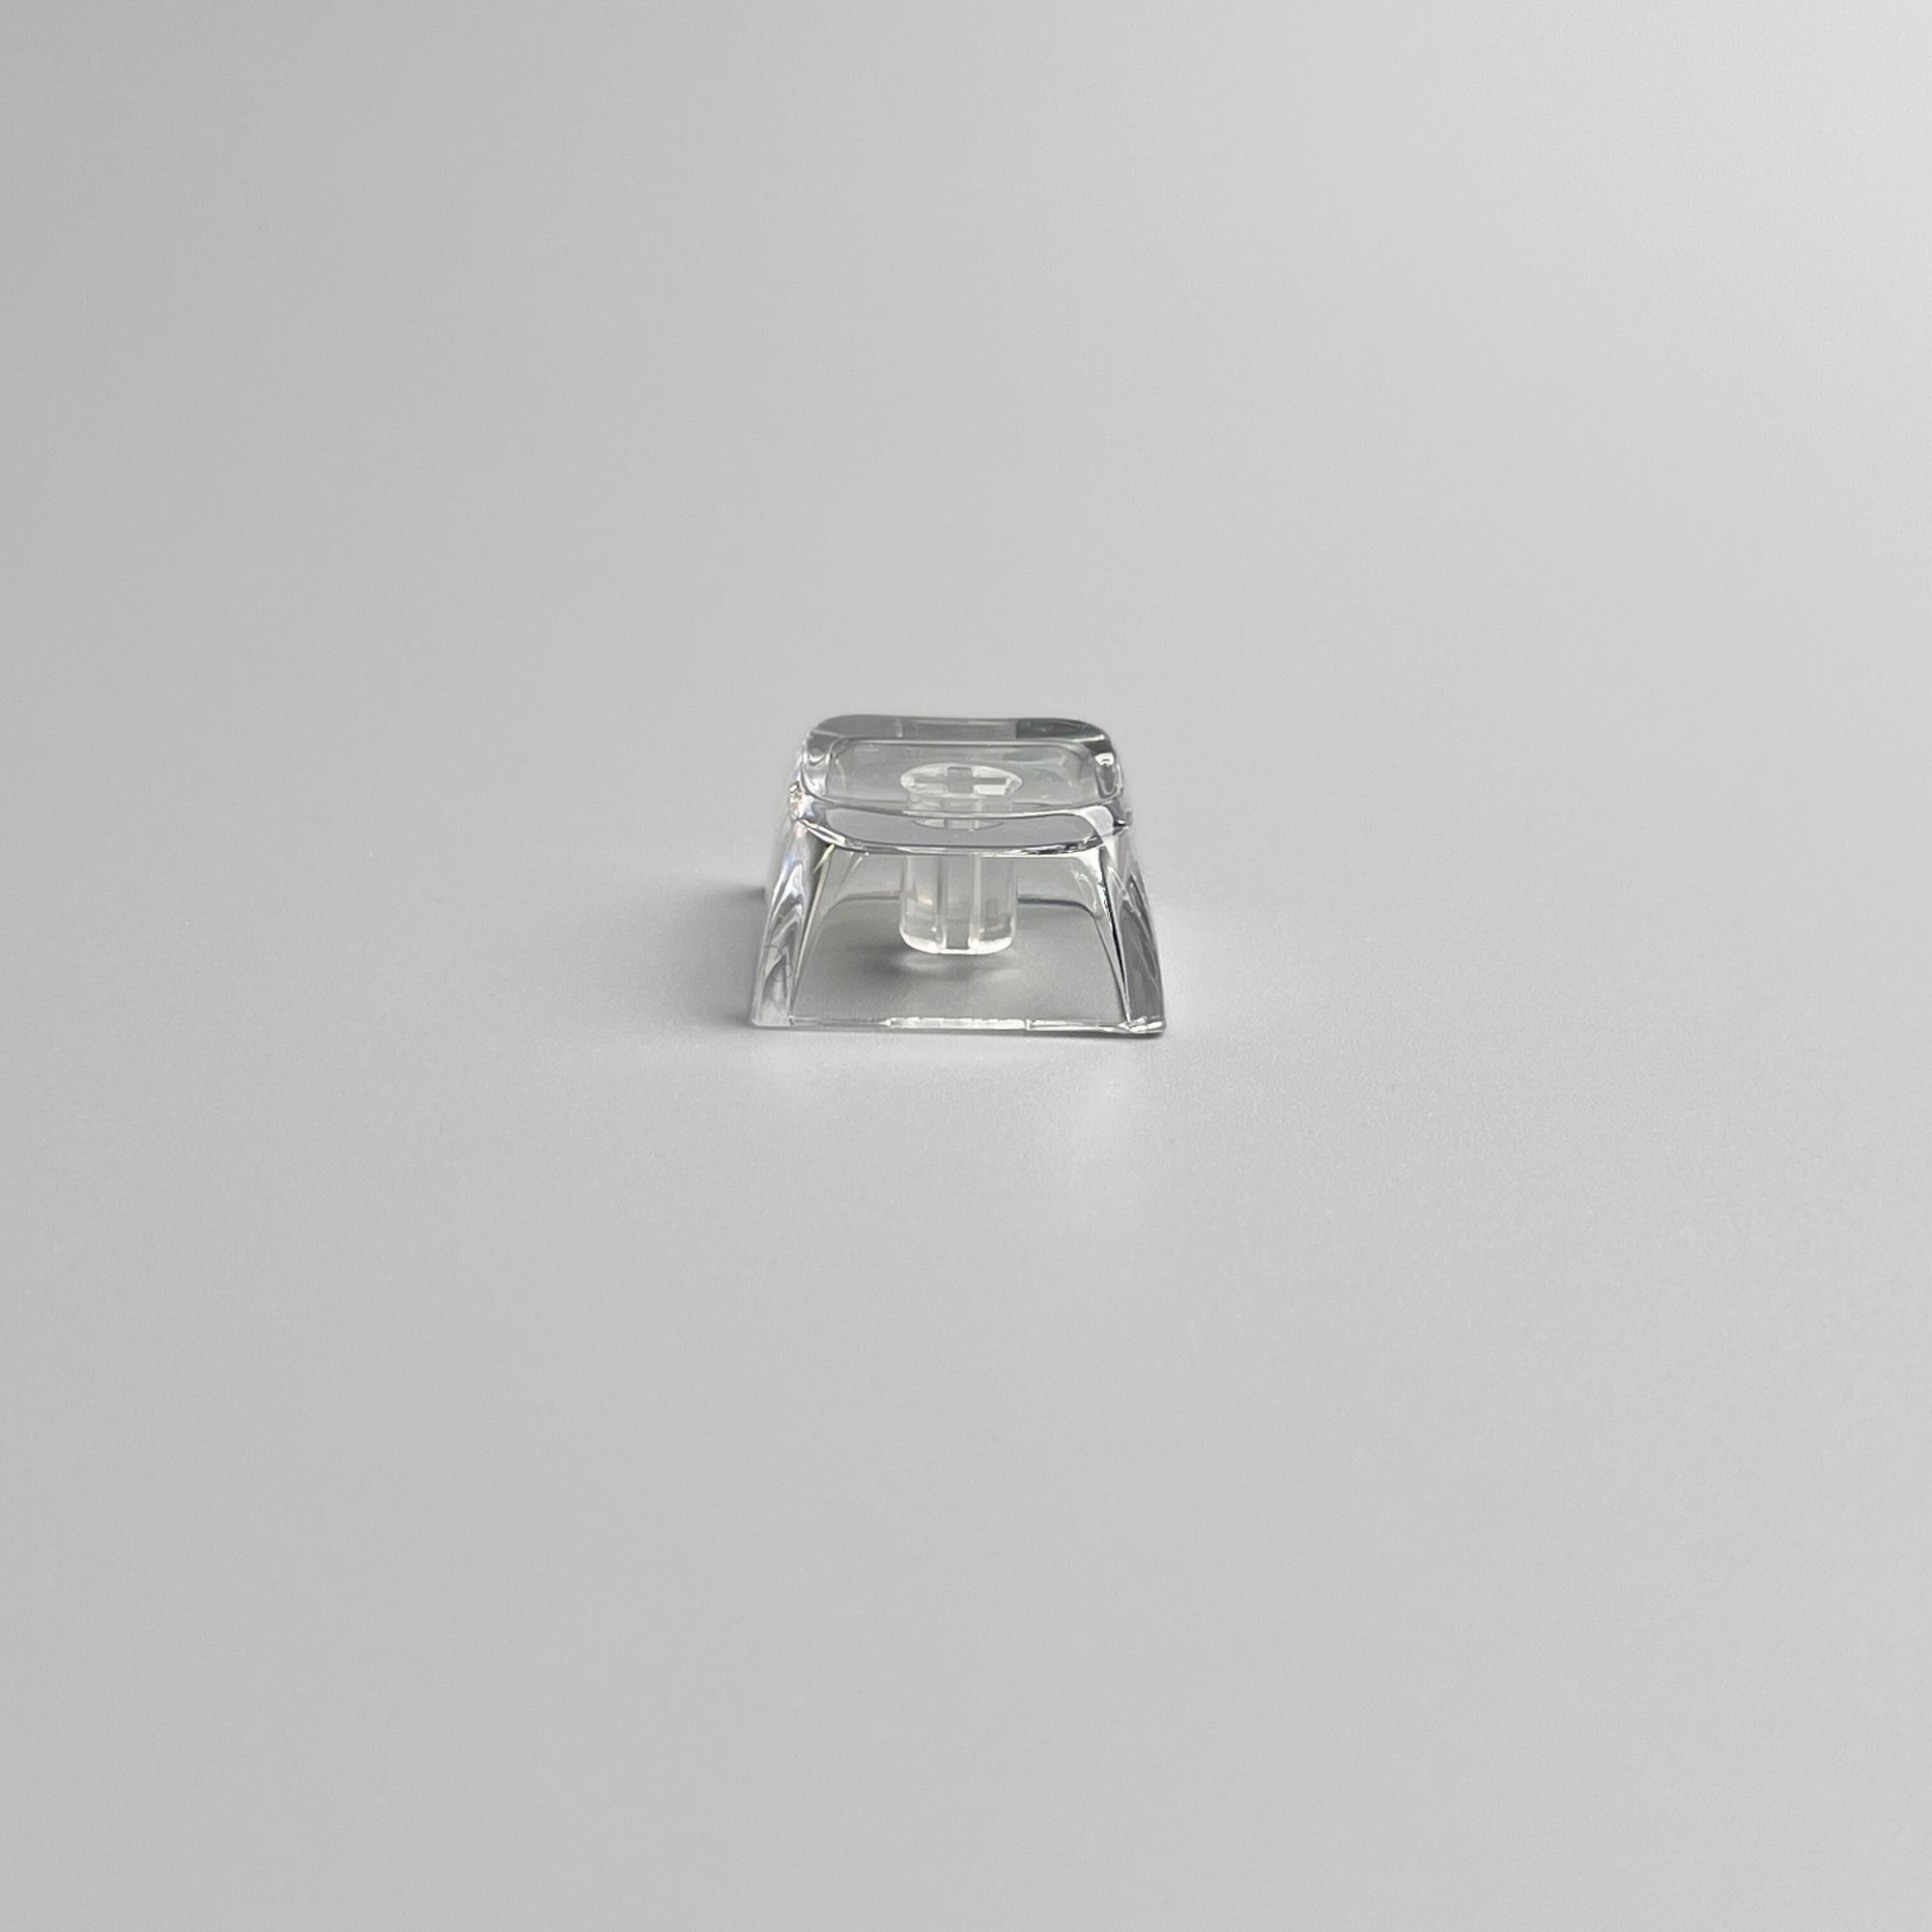 XDA Transparent Clear Keycap Glass-like Keycap